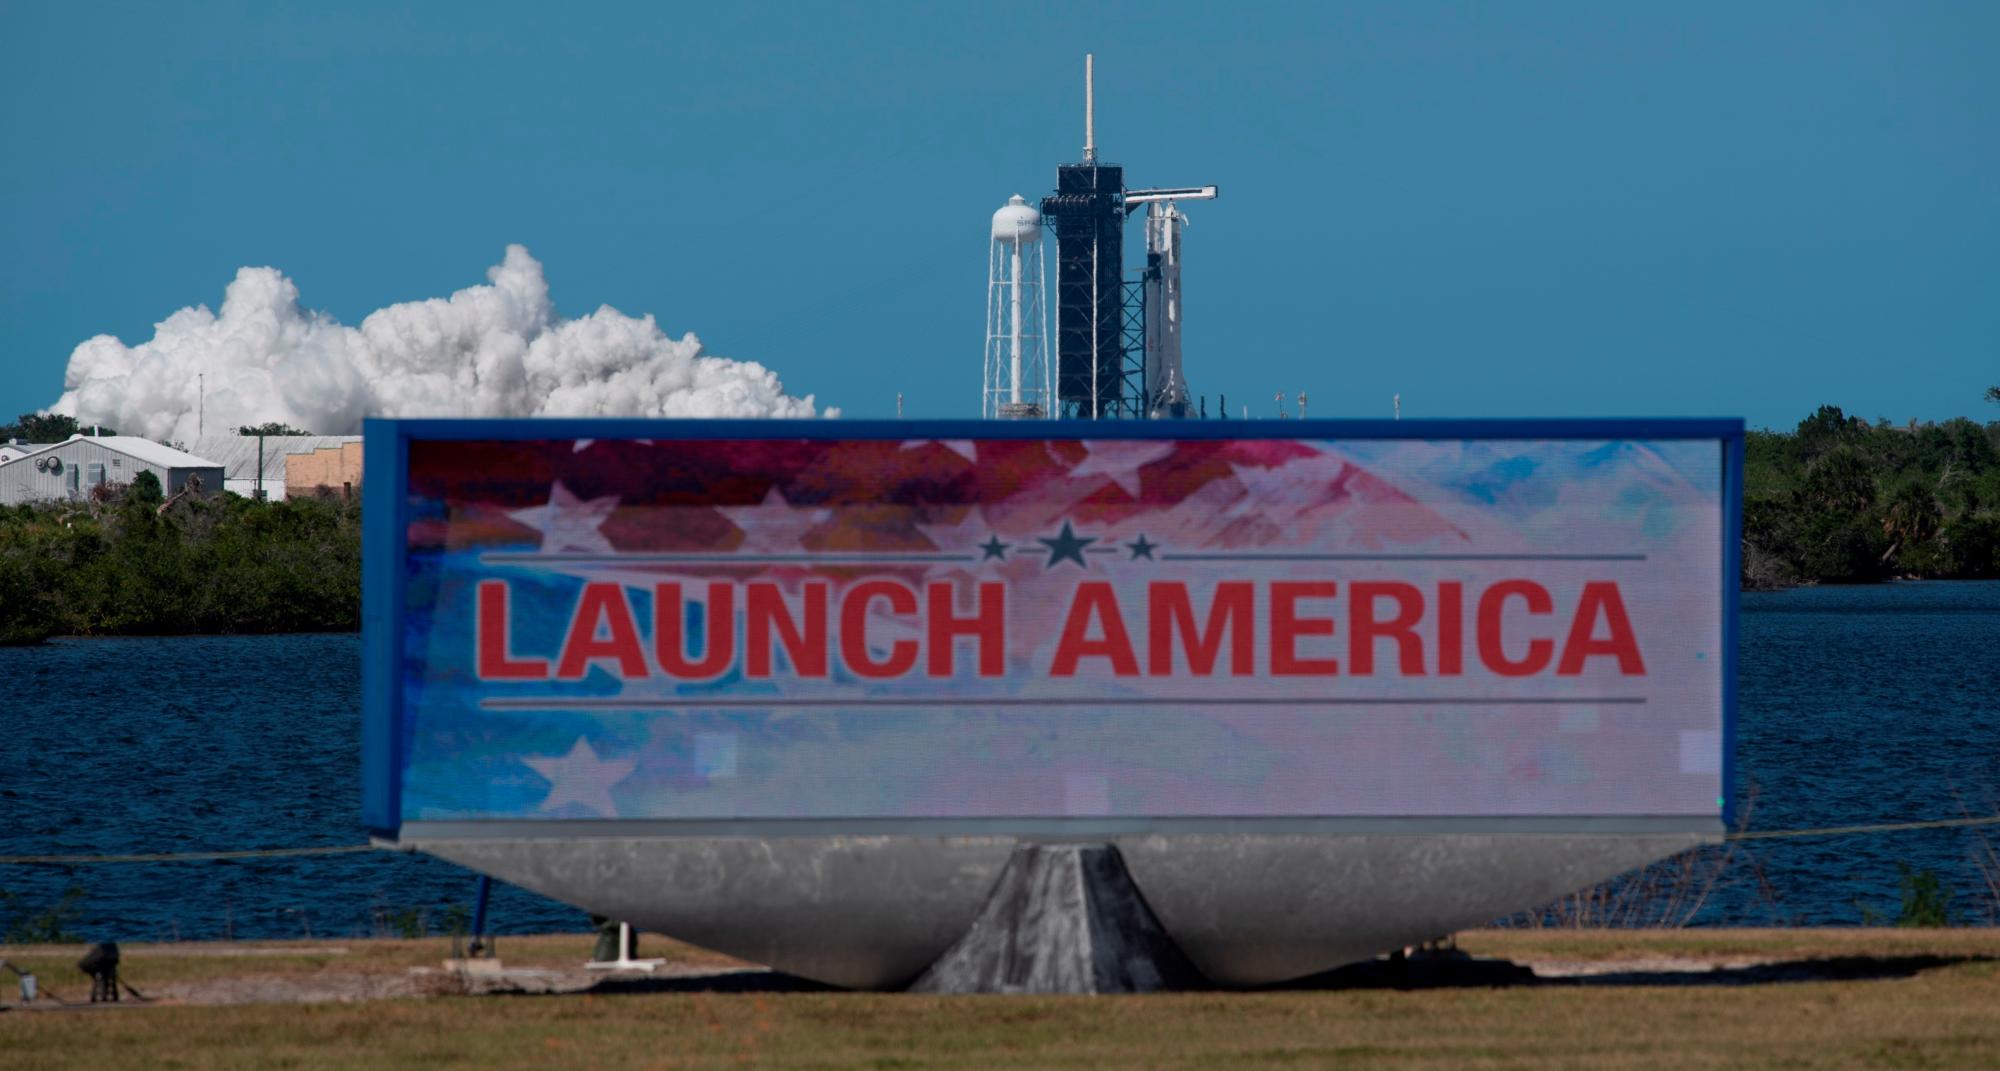 Cabo Cañaveral (Estados Unidos), 22/05 / 2020.- Una foto distribuida por la NASA muestra que se ve un cohete SpaceX Falcon 9 con la nave espacial Crew Dragon a bordo de la plataforma de lanzamiento en el complejo de lanzamiento 39A durante una breve prueba estática de fuego antes de la misión SpaceX Demo-2 de la NASA, en el Centro Espacial Kennedy de la NASA en Florida, EE. UU., 22 de mayo de 2020. La misión SpaceX Demo-2 de la NASA es el primer lanzamiento con astronautas de la nave espacial SpaceX Crew Dragon y Falcon 9 cohete a la Estación Espacial Internacional como parte del Programa de tripulación comercial de la agencia. El vuelo de prueba sirve como una demostración de extremo a extremo del sistema de transporte de la tripulación de SpaceX. Está previsto que Robert Behnken y Douglas Hurley se lancen a las 4:33 p.m. EDT el 27 de mayo de 2020, desde el complejo de lanzamiento 39A en el Centro Espacial Kennedy. La nueva era de los vuelos espaciales humanos comenzará cuando los astronautas estadounidenses vuelvan a lanzar un cohete estadounidense desde el suelo estadounidense a la órbita terrestre baja por primera vez desde la conclusión del Programa del Transbordador Espacial en 2011. (Incendio, Estados Unidos) EFE / EPA / NASA / Joel Kowsky CRÉDITO OBLIGATORIO DE FOLLETO: (NASA / Joel Kowsky)